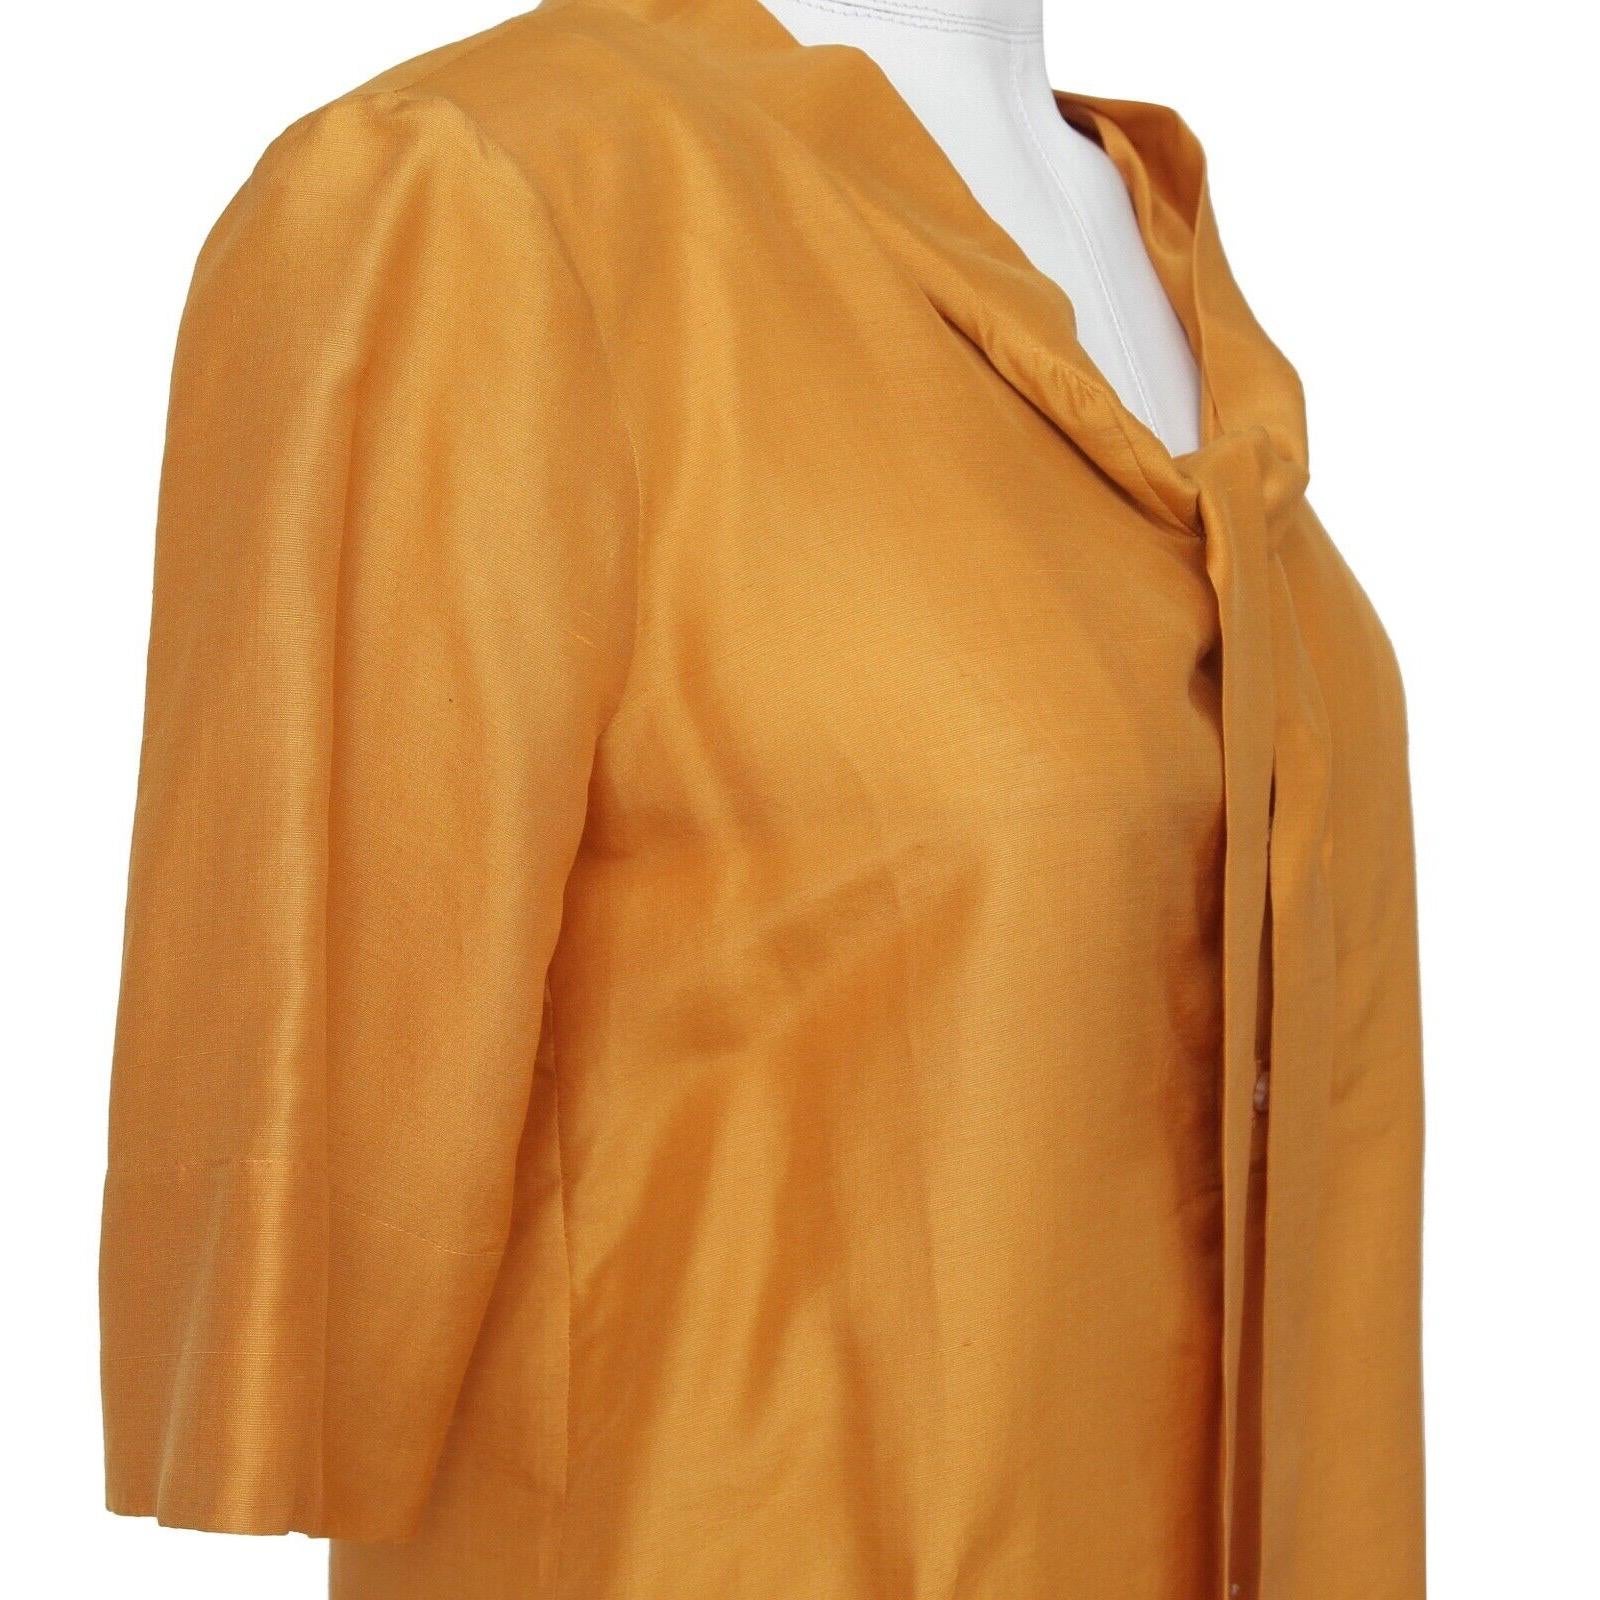 Chemisier Chloé à manches courtes en soie jaune doré et orange, taille 36, automne 2007 Pour femmes en vente